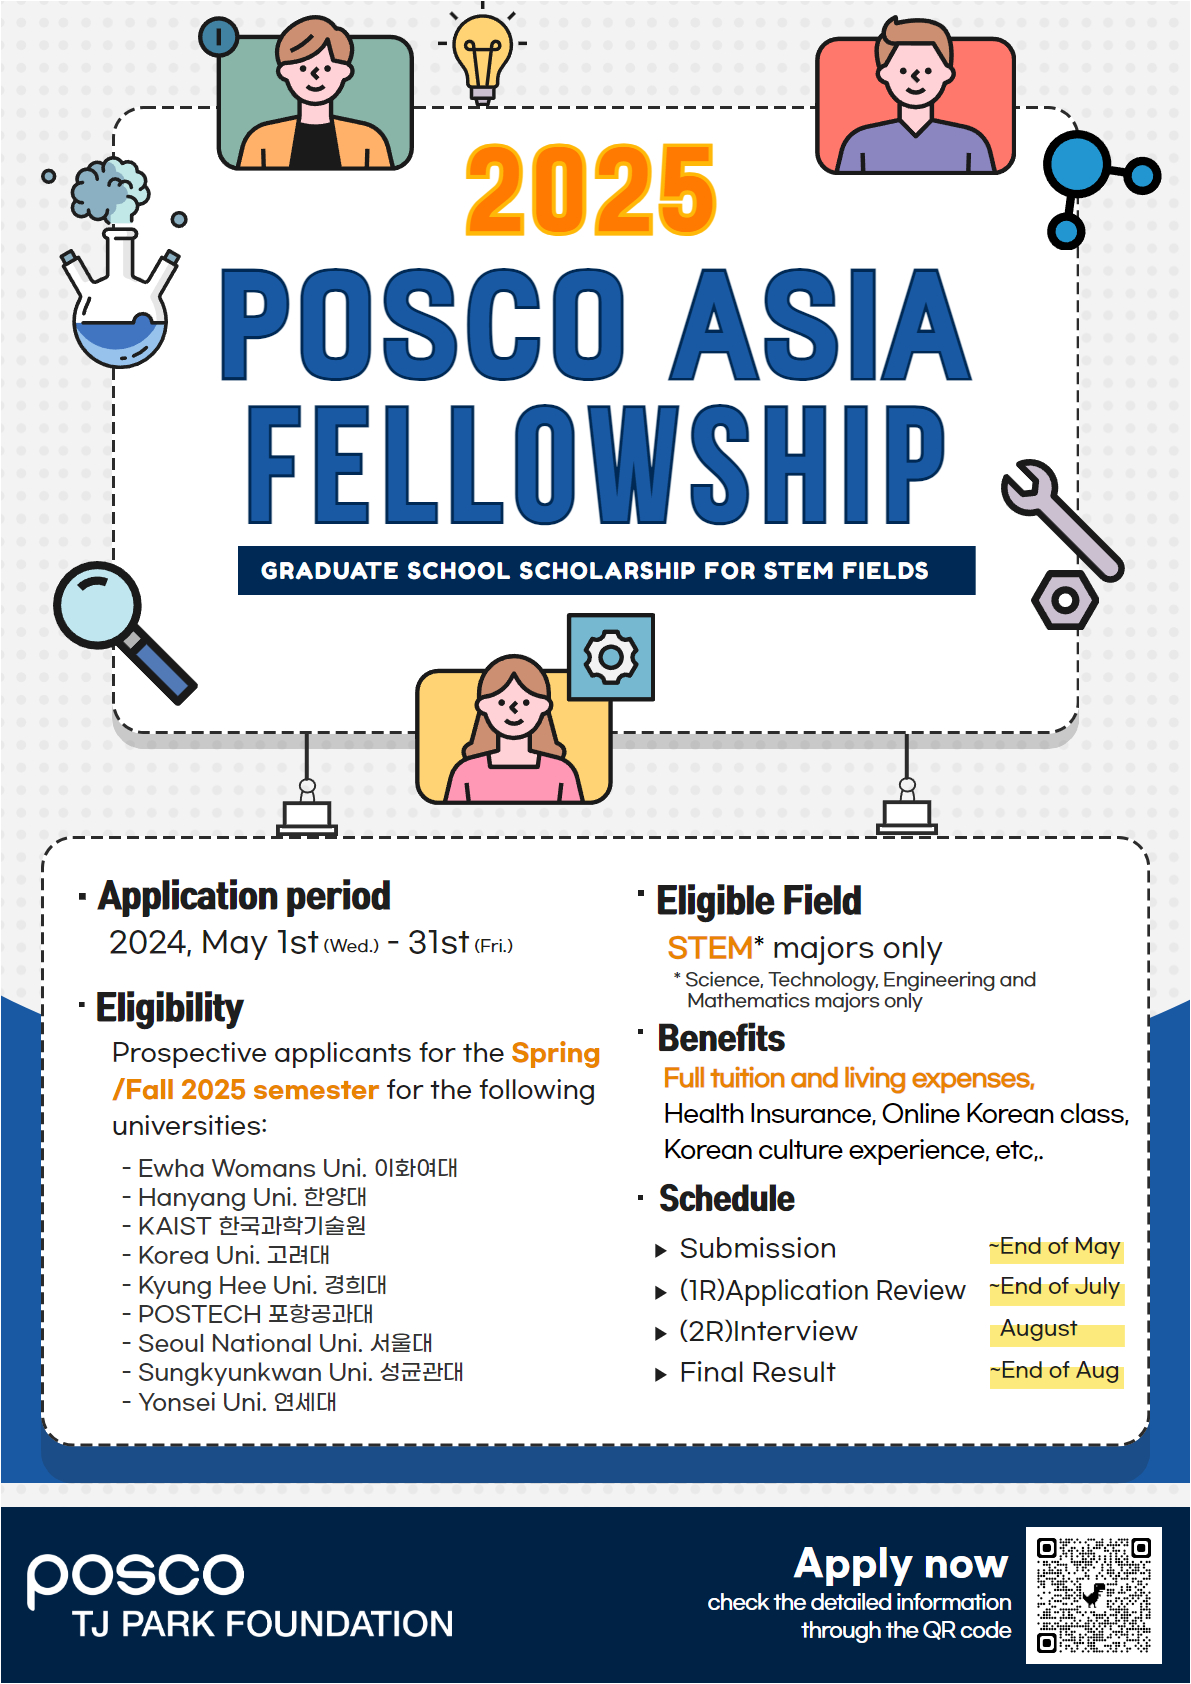 붙임2. 2025 POSCO ASIA FELLOWSHIP 포스터.jpg